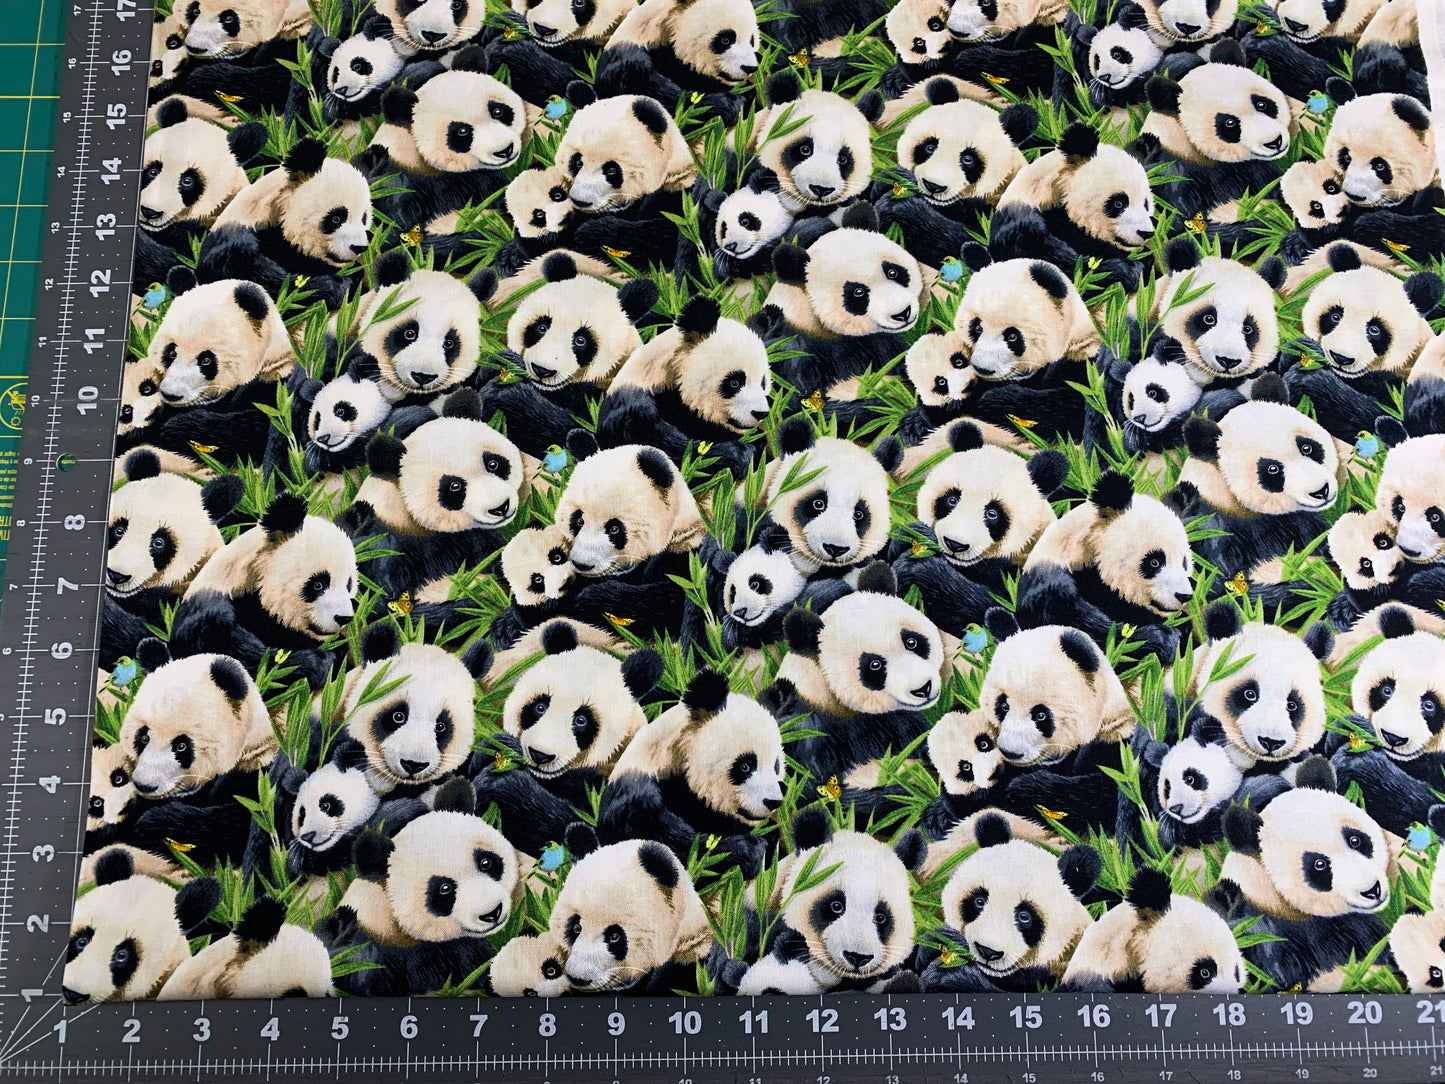 Panda bear fabric 1329 Black Panda fabric